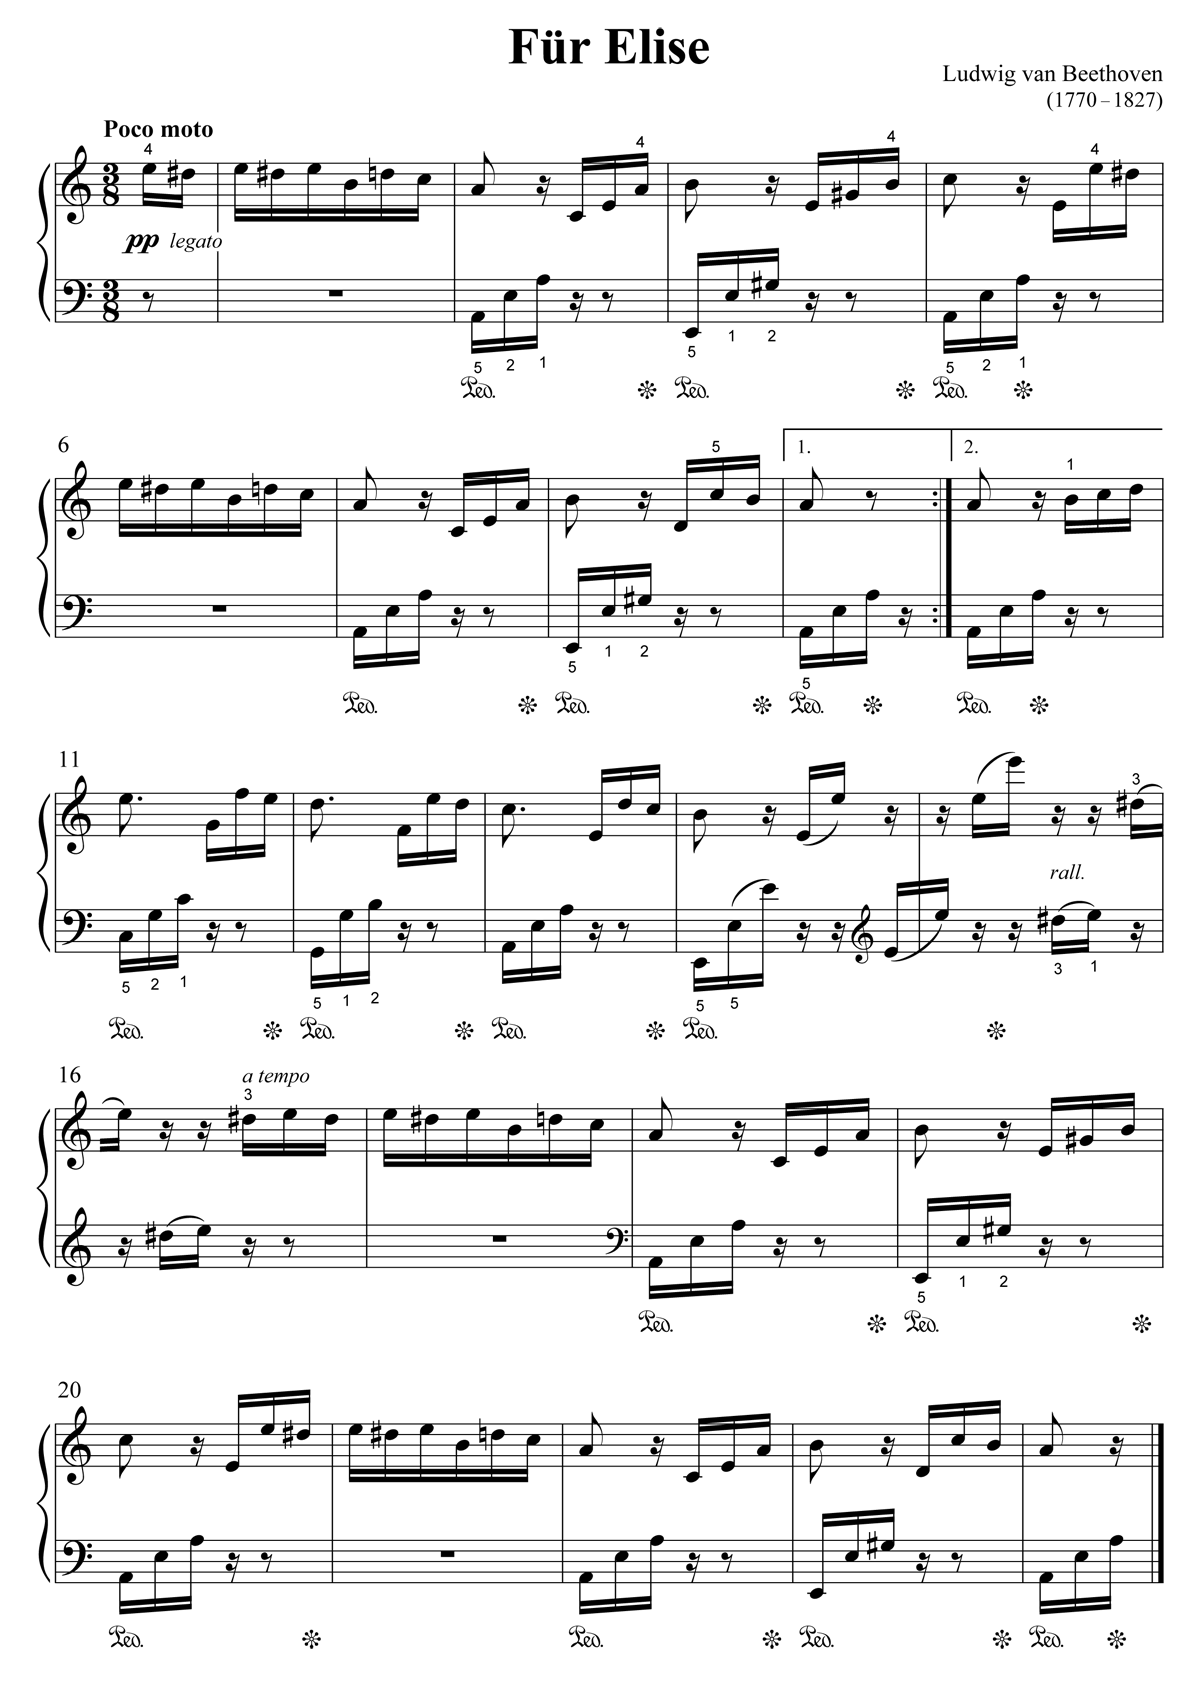 Noten zum Stück 'Für Elise' von Beethoven